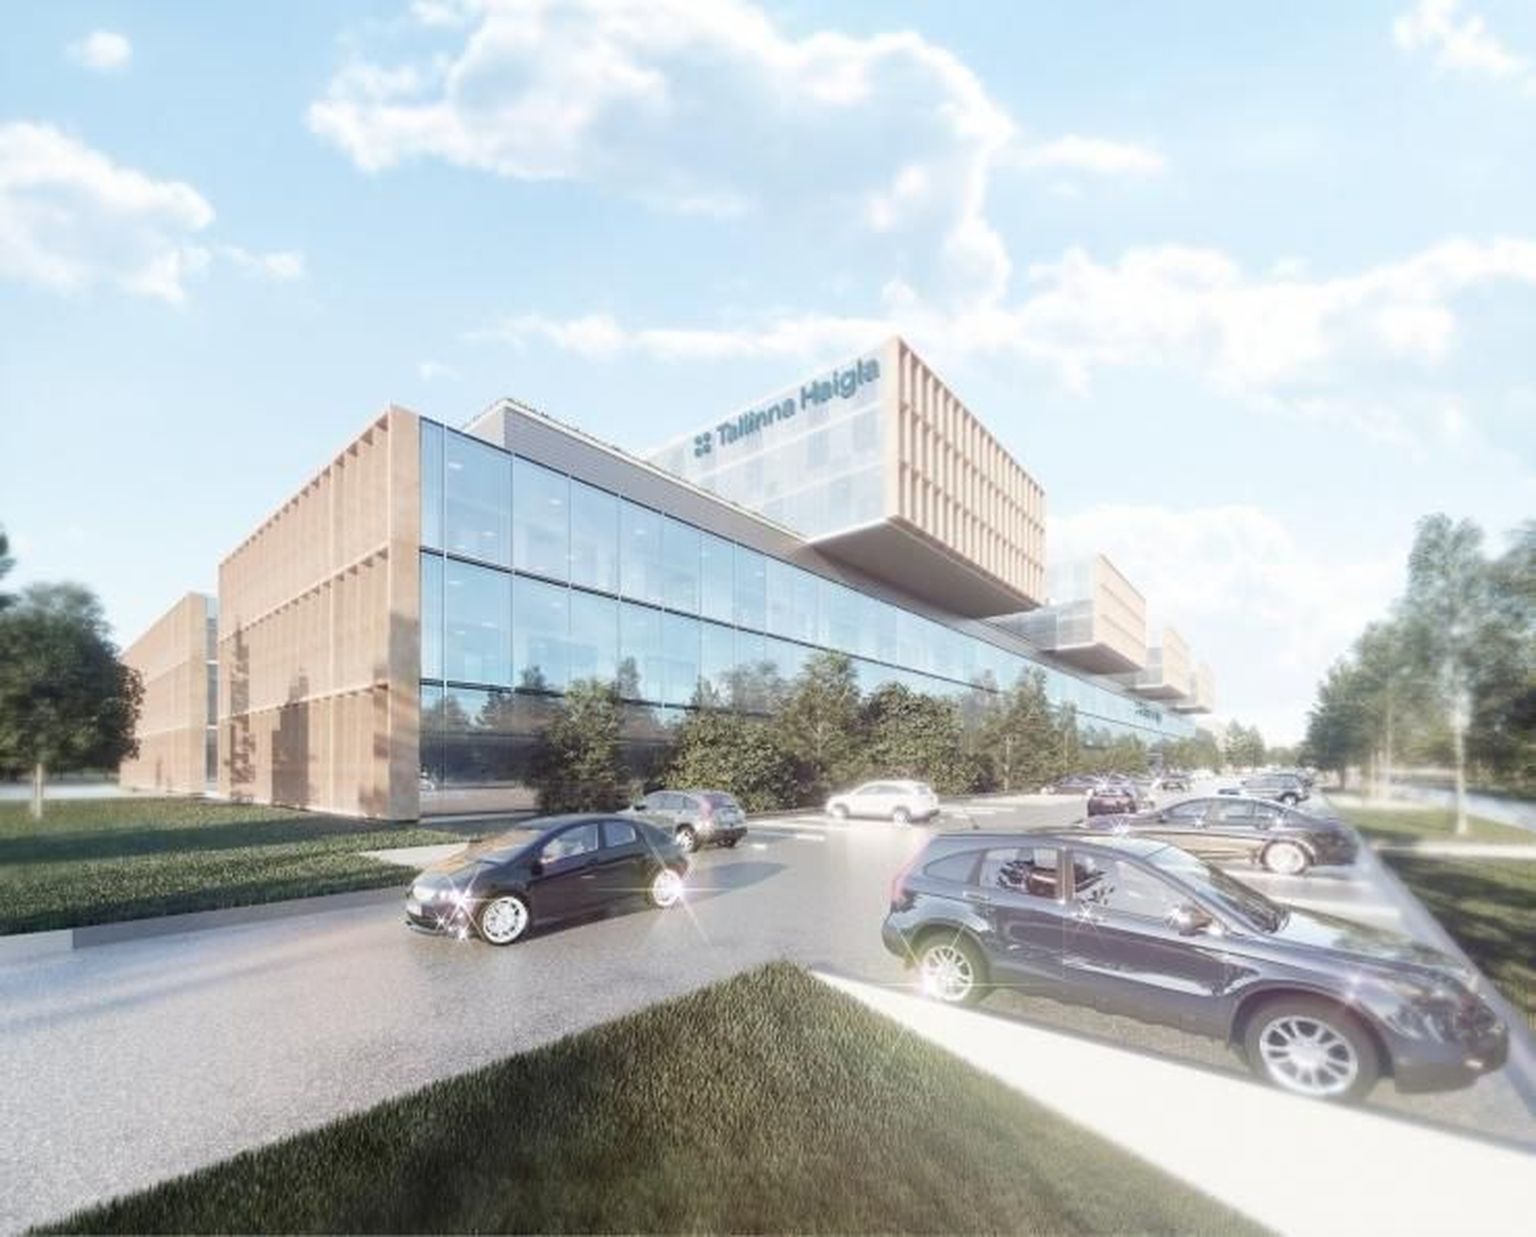 На эскизах будущая Таллиннская больница смотрится грандиозной современной постройкой.